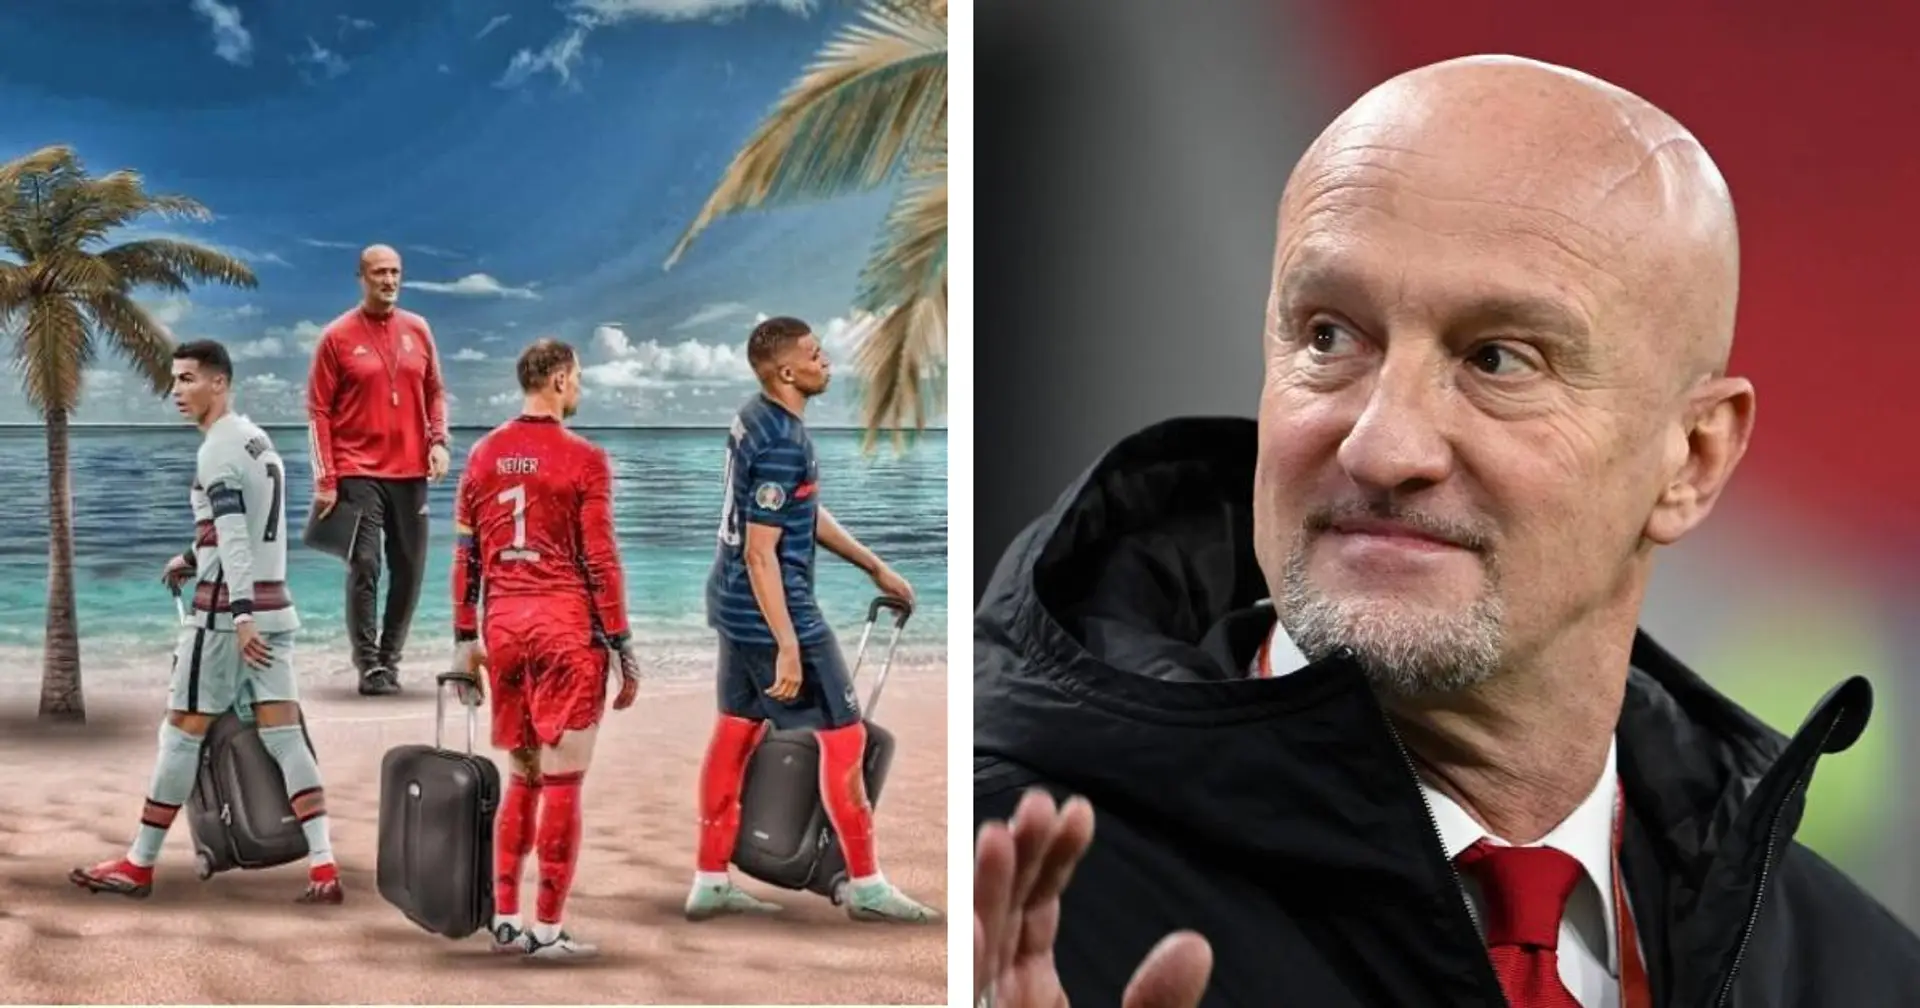 "Wir sehen uns bald am Strand": Ungarn-Nationalcoach macht sich über Neuer, Mbappe und Ronaldo lustig